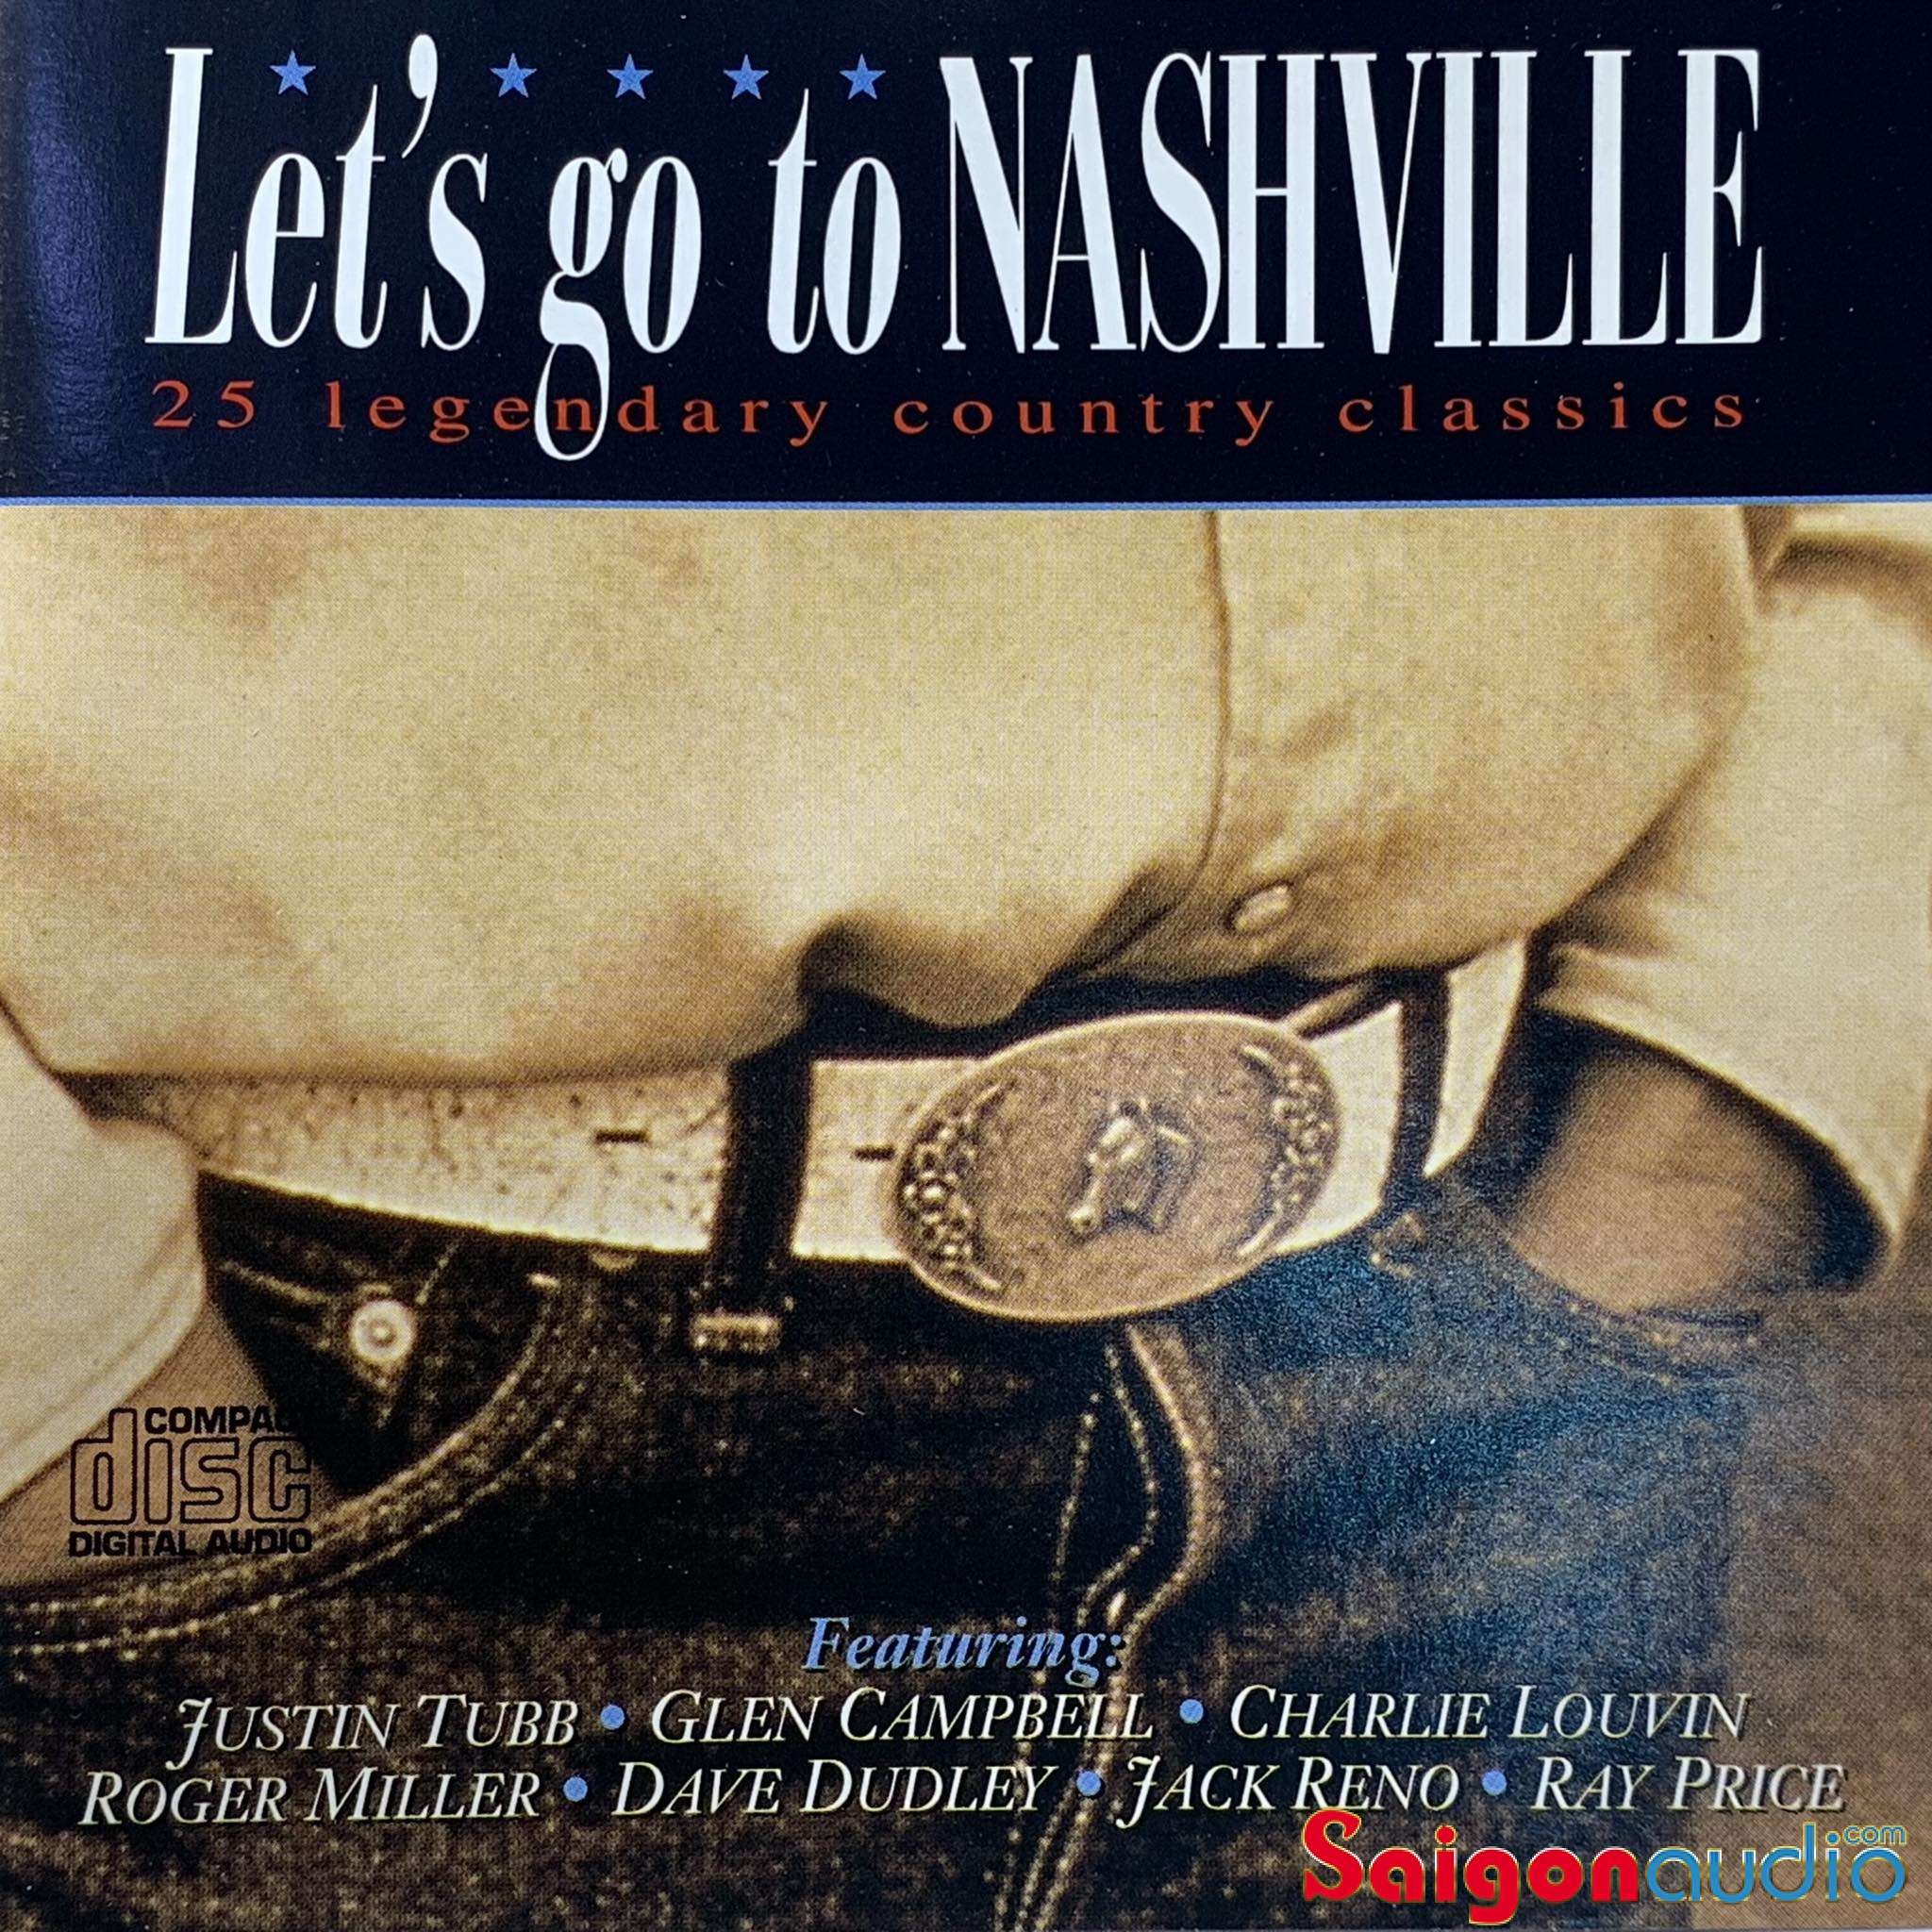 Đĩa CD gốc nhạc country Let s Go To Nashville 25 Legendary Country Classics (Free ship khi mua 2 đĩa CD cùng hoặc khác loại)